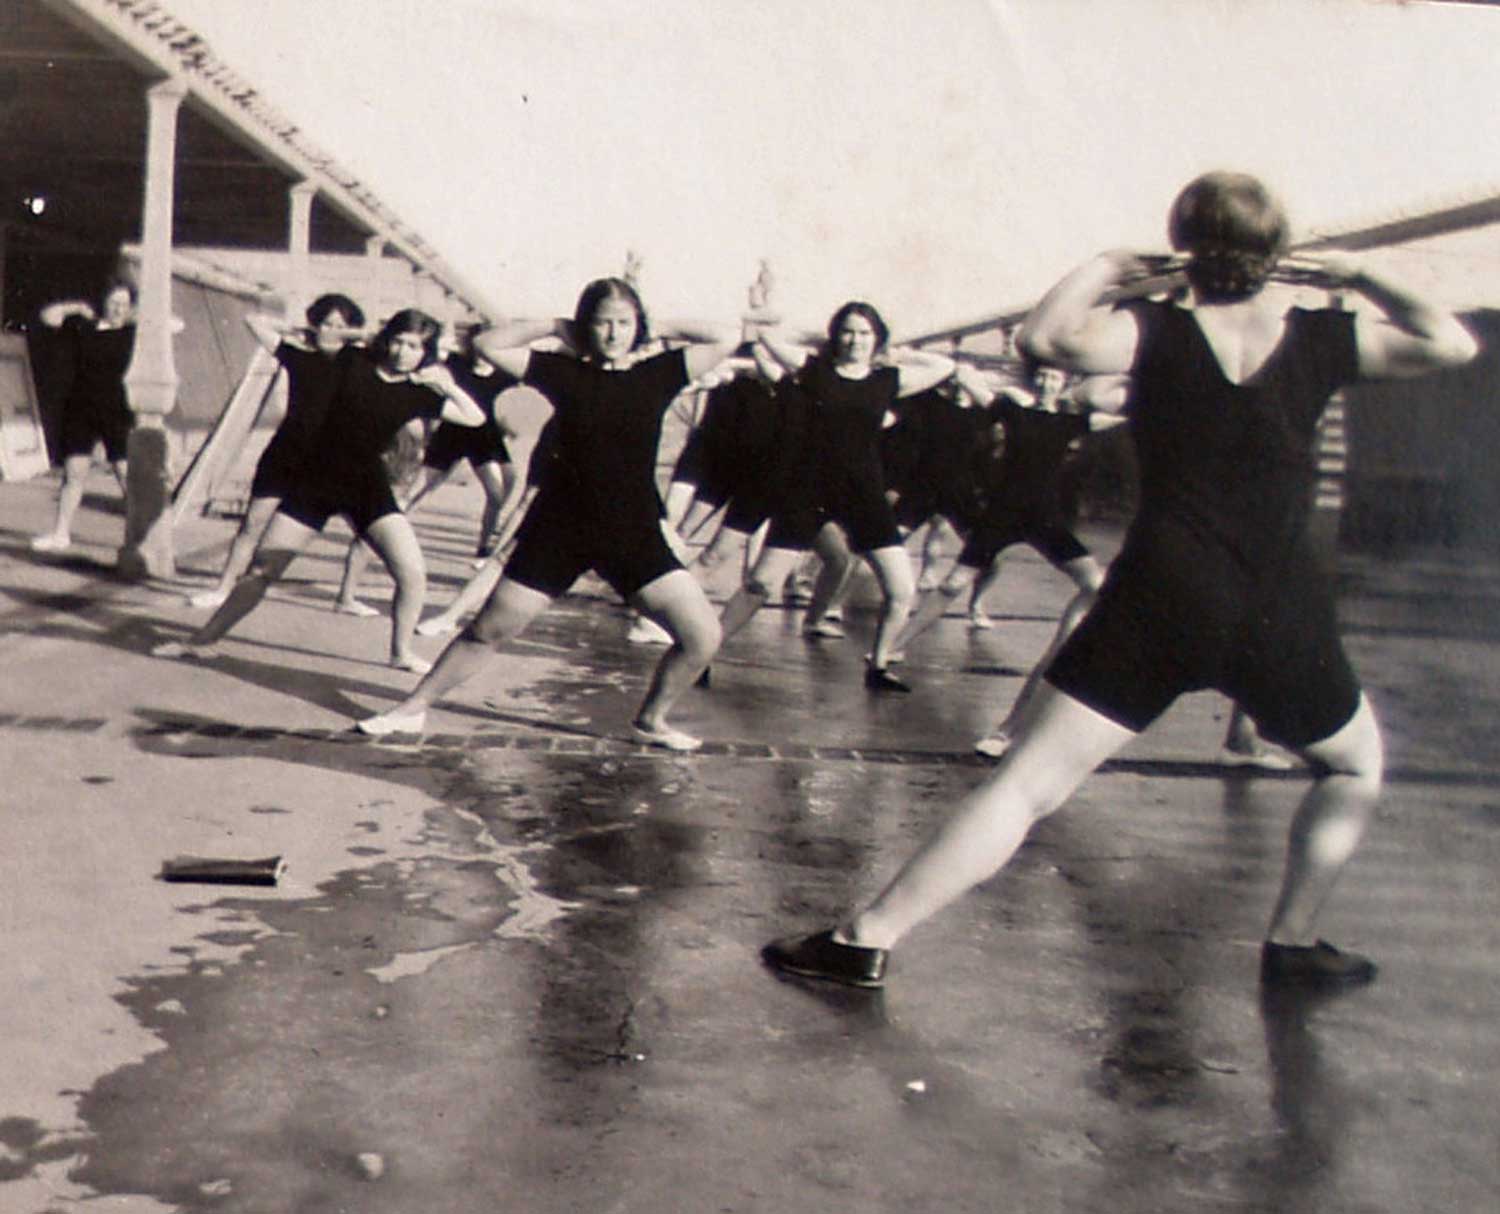 Foto, schwarz-weiß, außen: Eine Gruppe von Menschen in schwarzen Turnanzügen macht einen Ausfallschritt zur Seite, das andere Knie ist gebeugt.